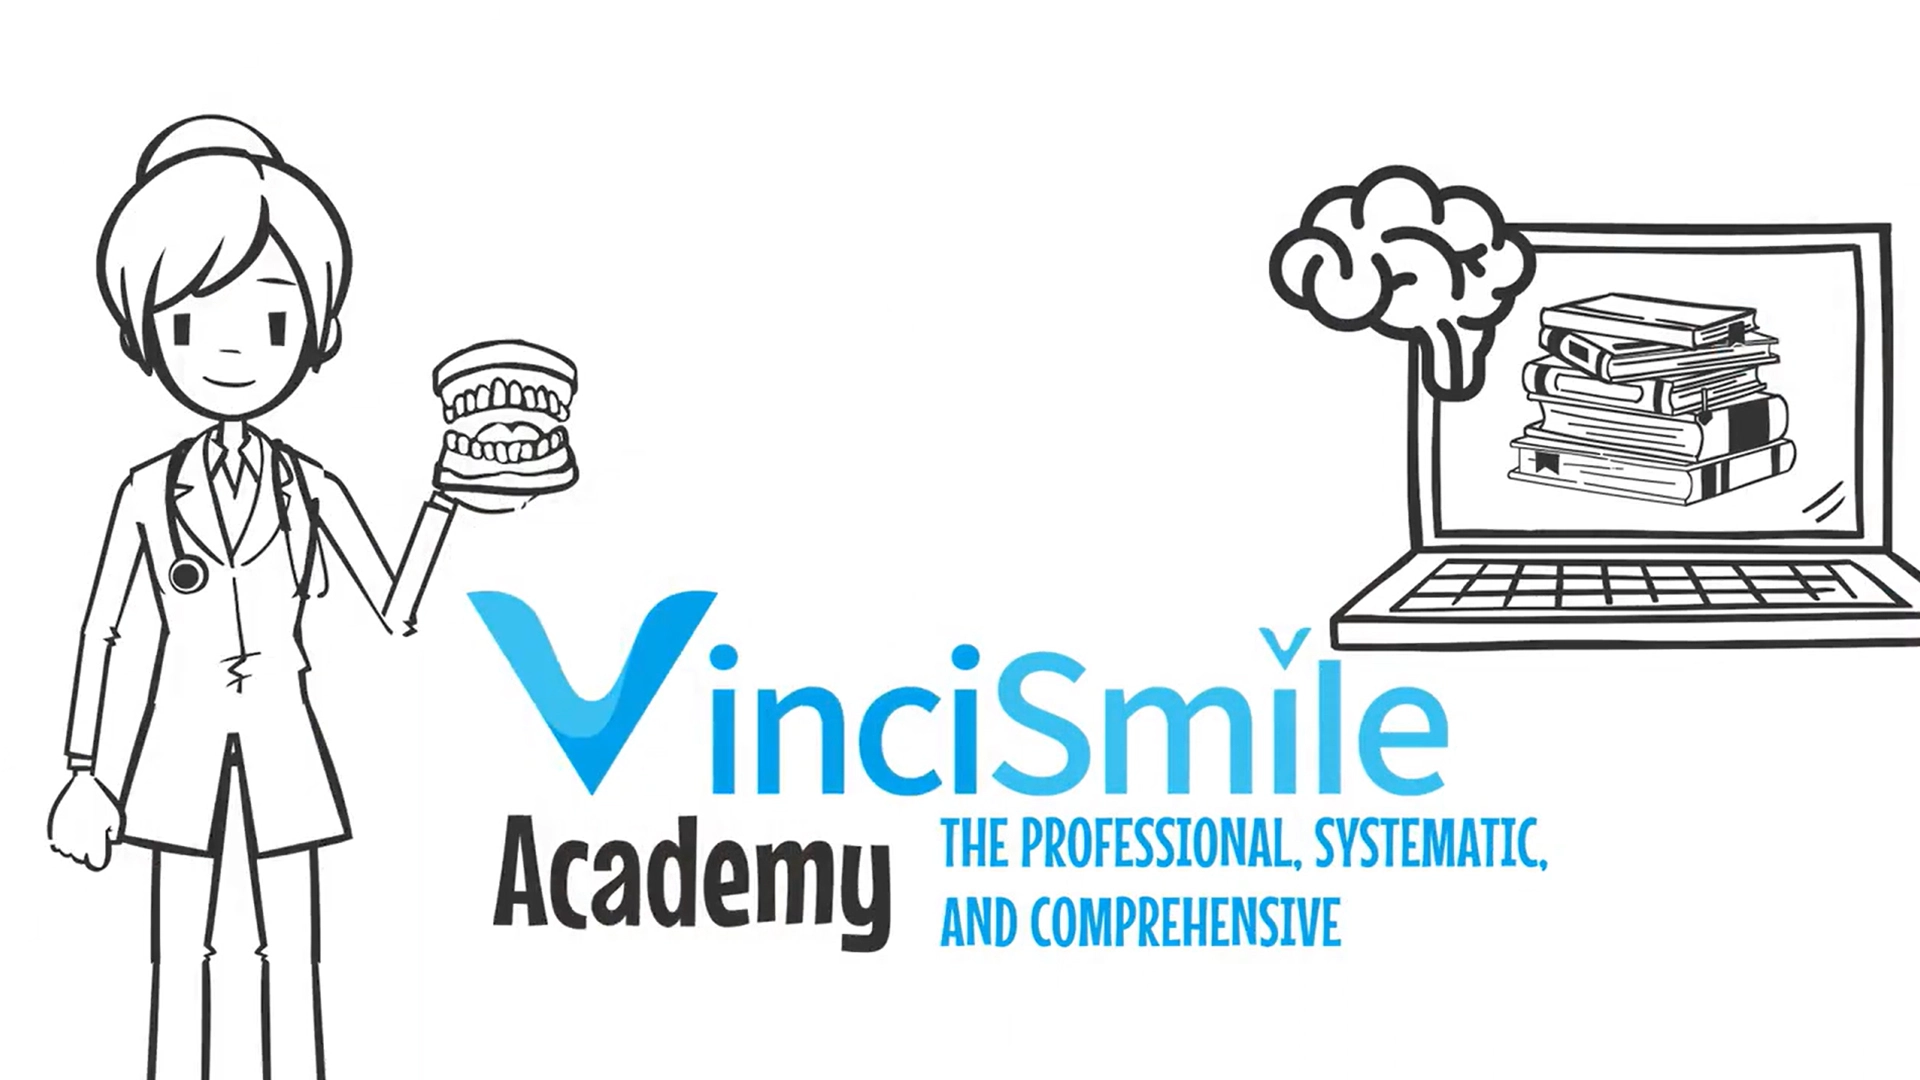 VinciSmile Academy Introduction